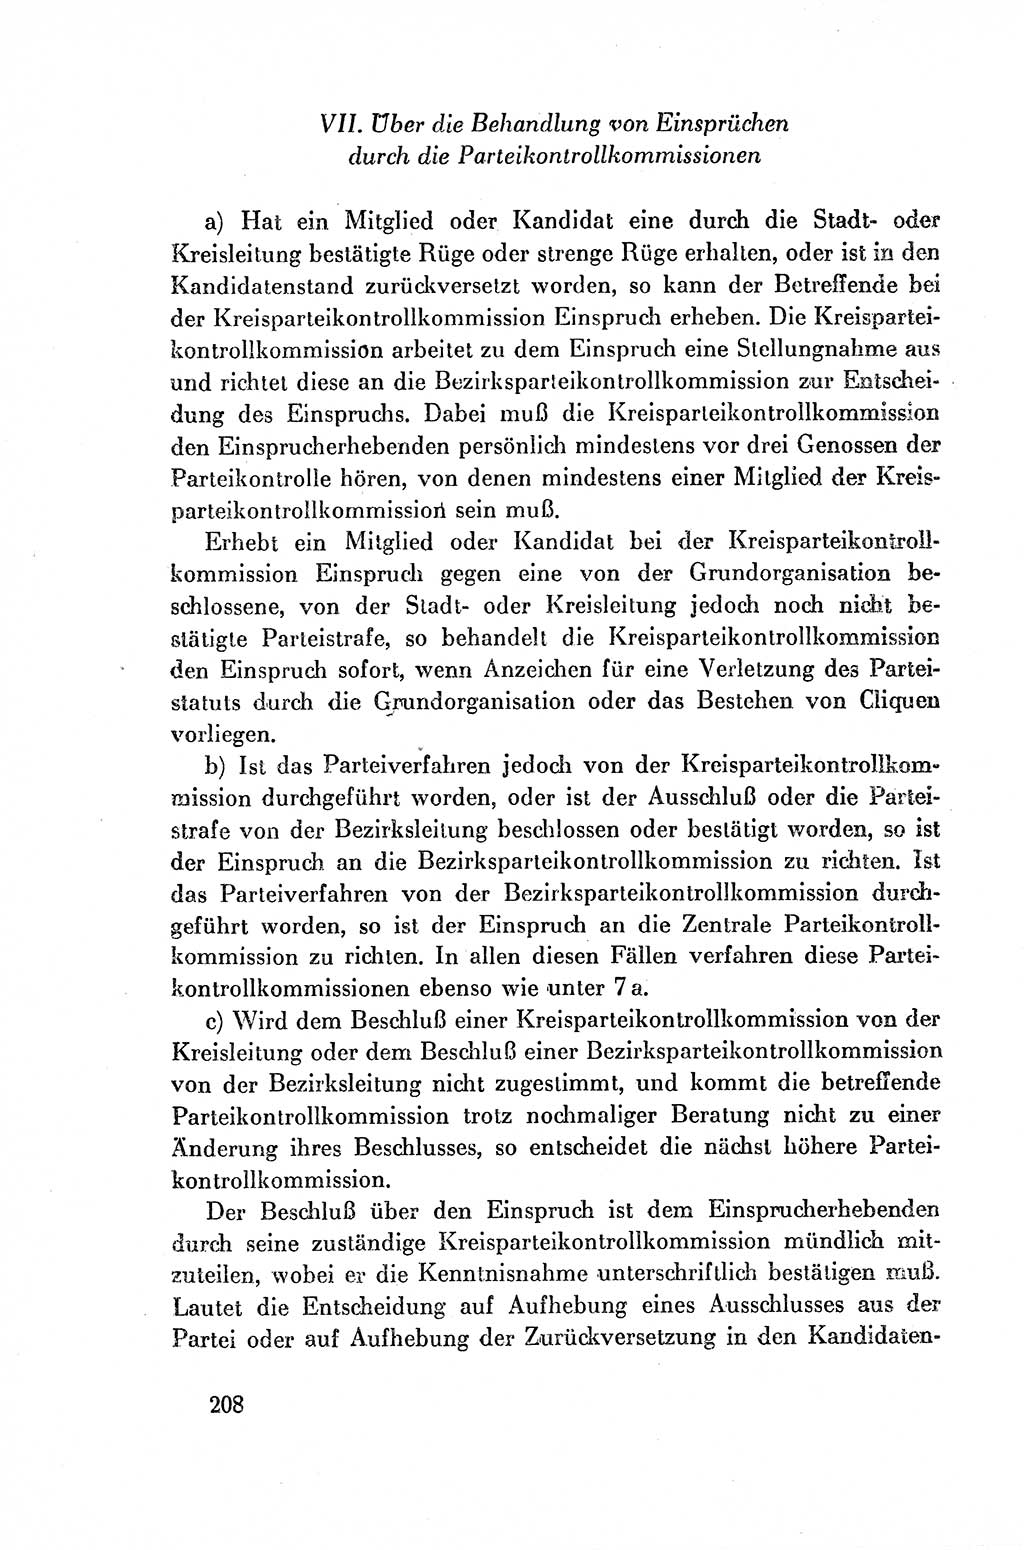 Dokumente der Sozialistischen Einheitspartei Deutschlands (SED) [Deutsche Demokratische Republik (DDR)] 1954-1955, Seite 208 (Dok. SED DDR 1954-1955, S. 208)